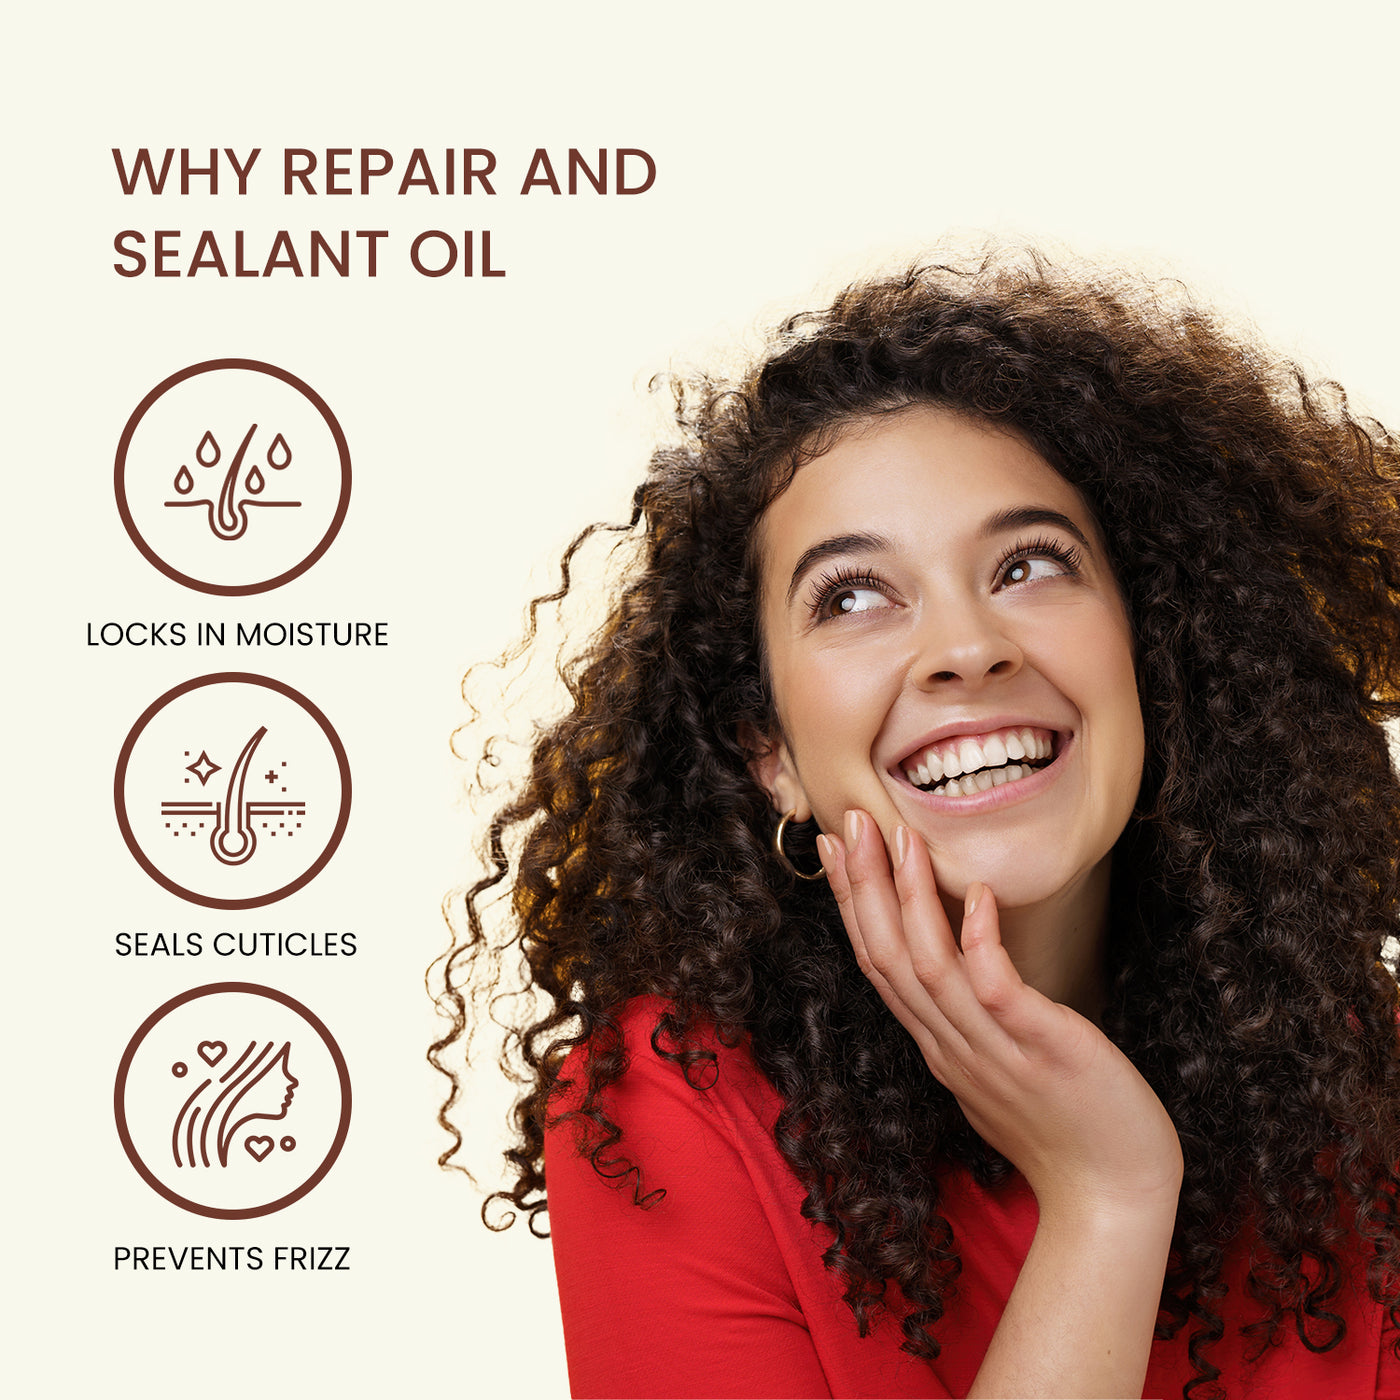 Repair and sealant oil